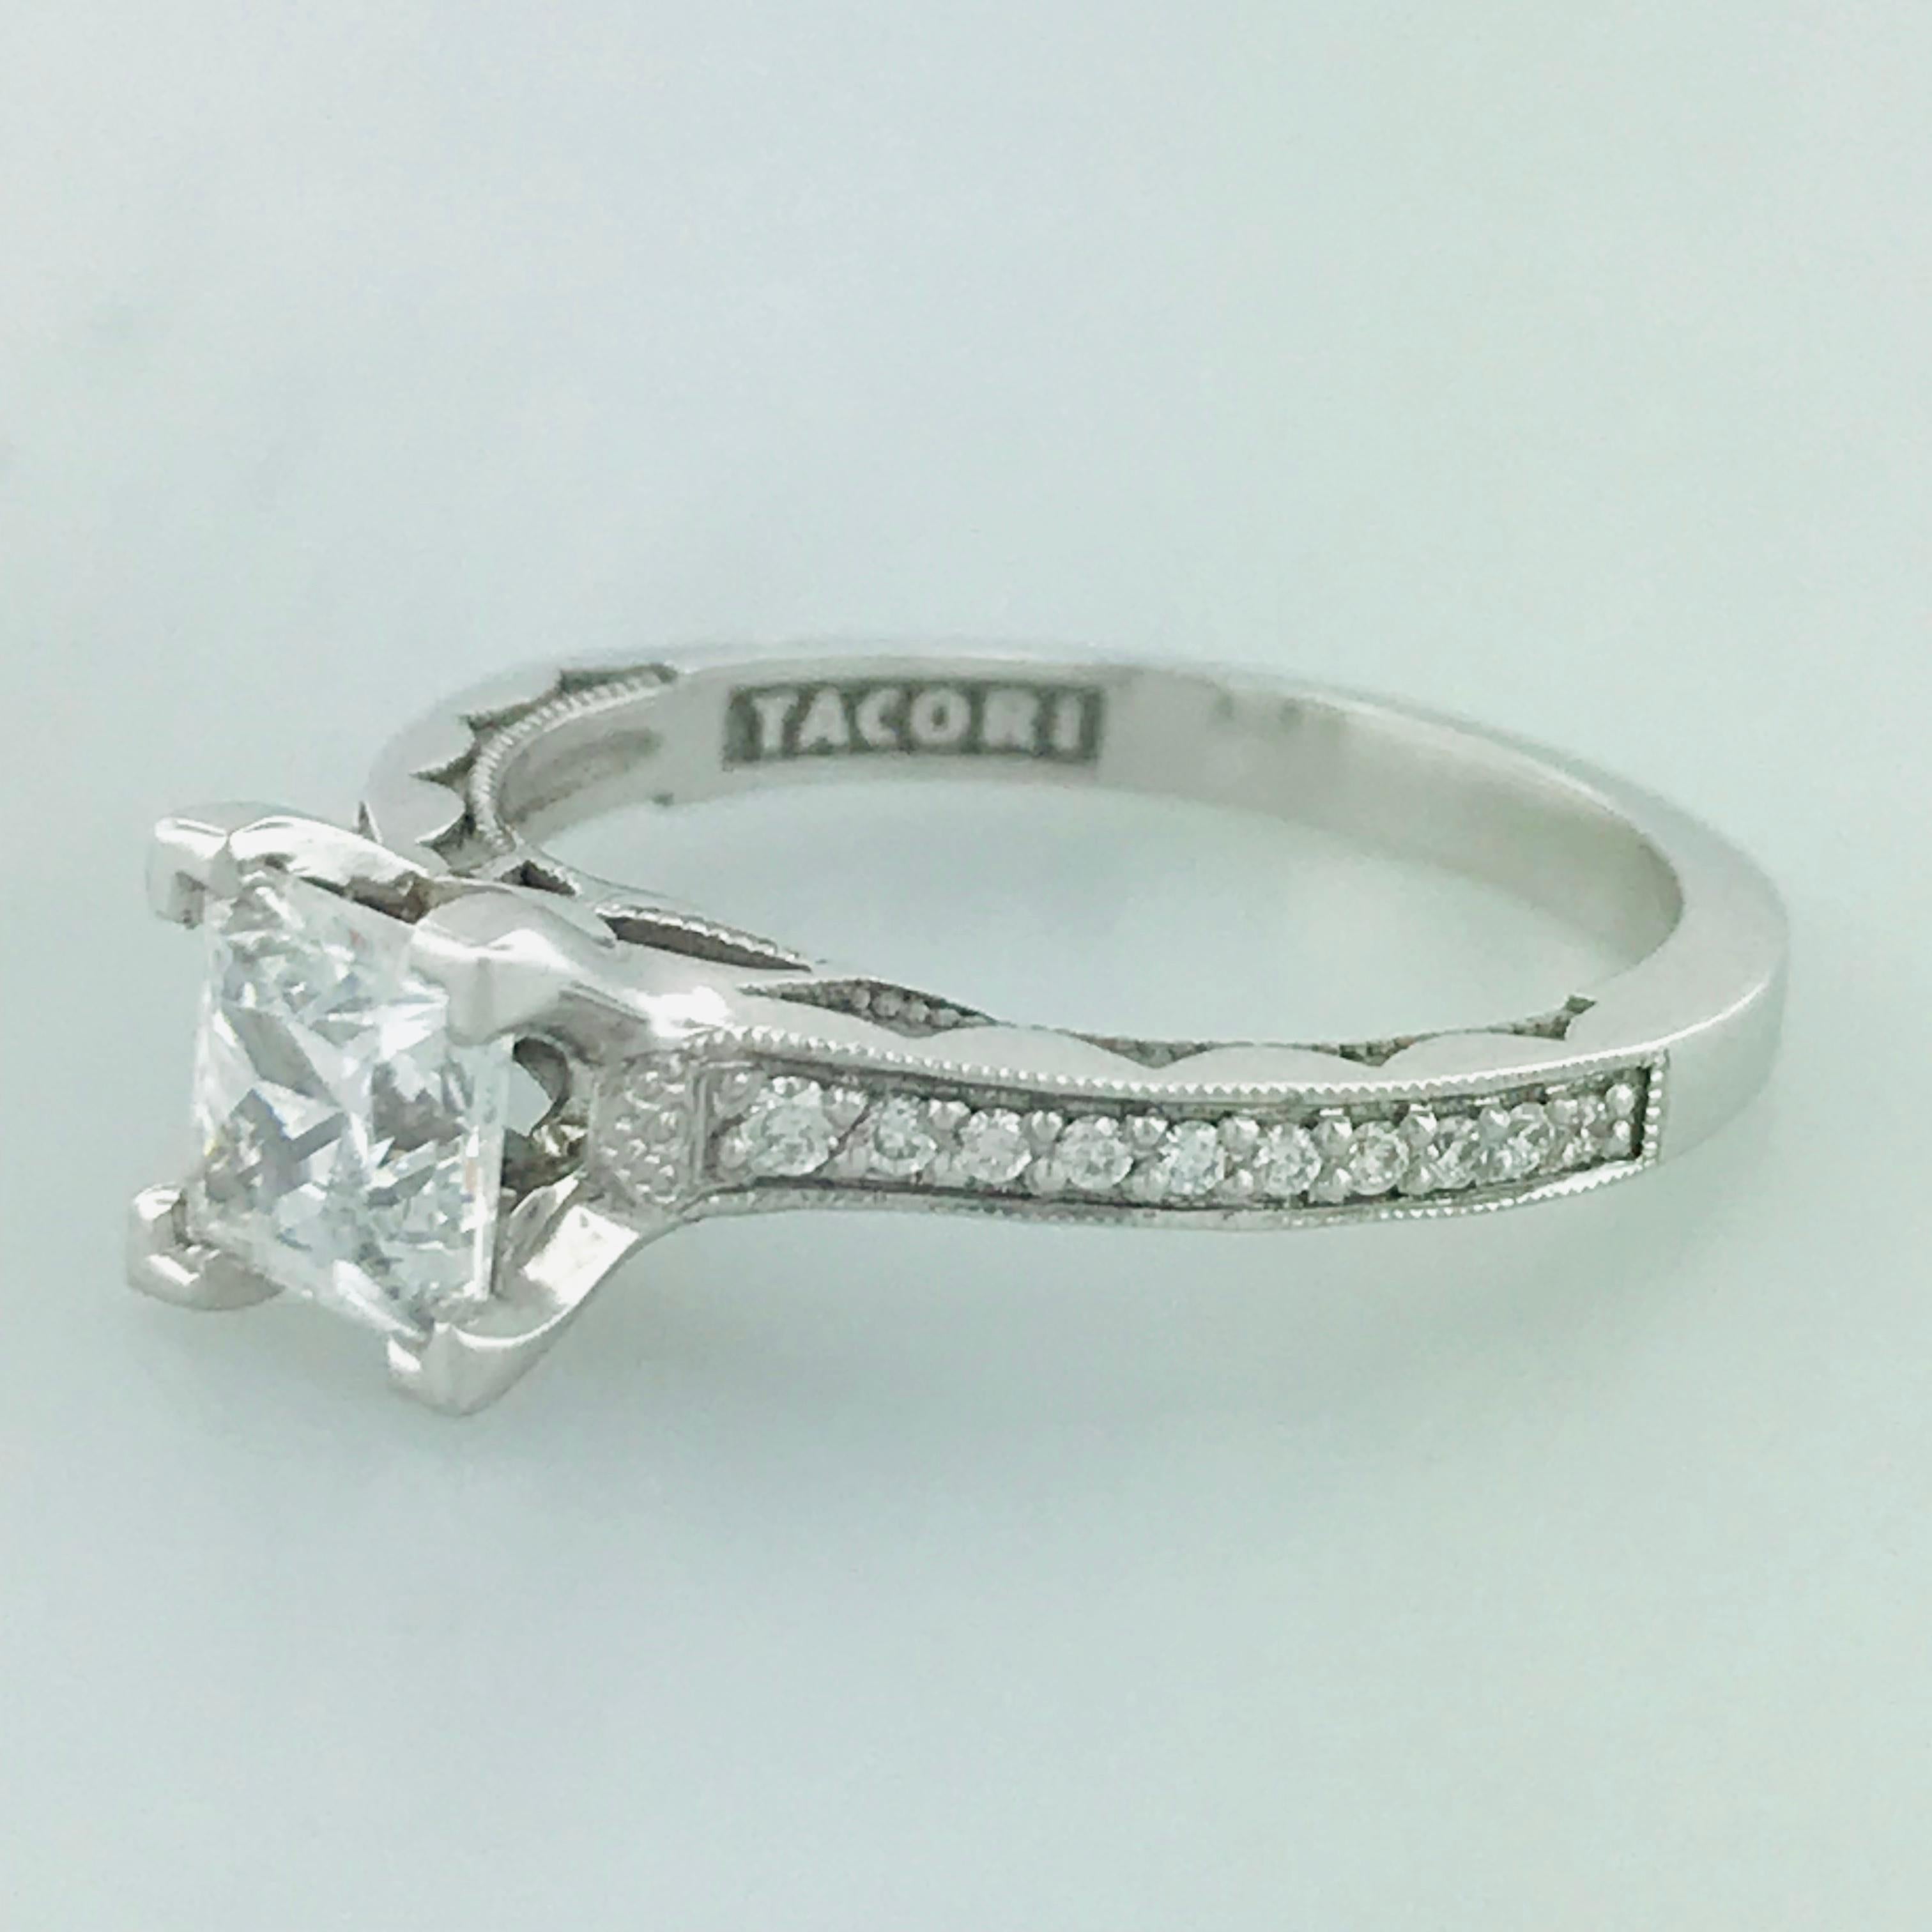 Artisan Tacori 1.00 Carat Princess Cut or Square Diamond 18 Karat White Gold Ring For Sale